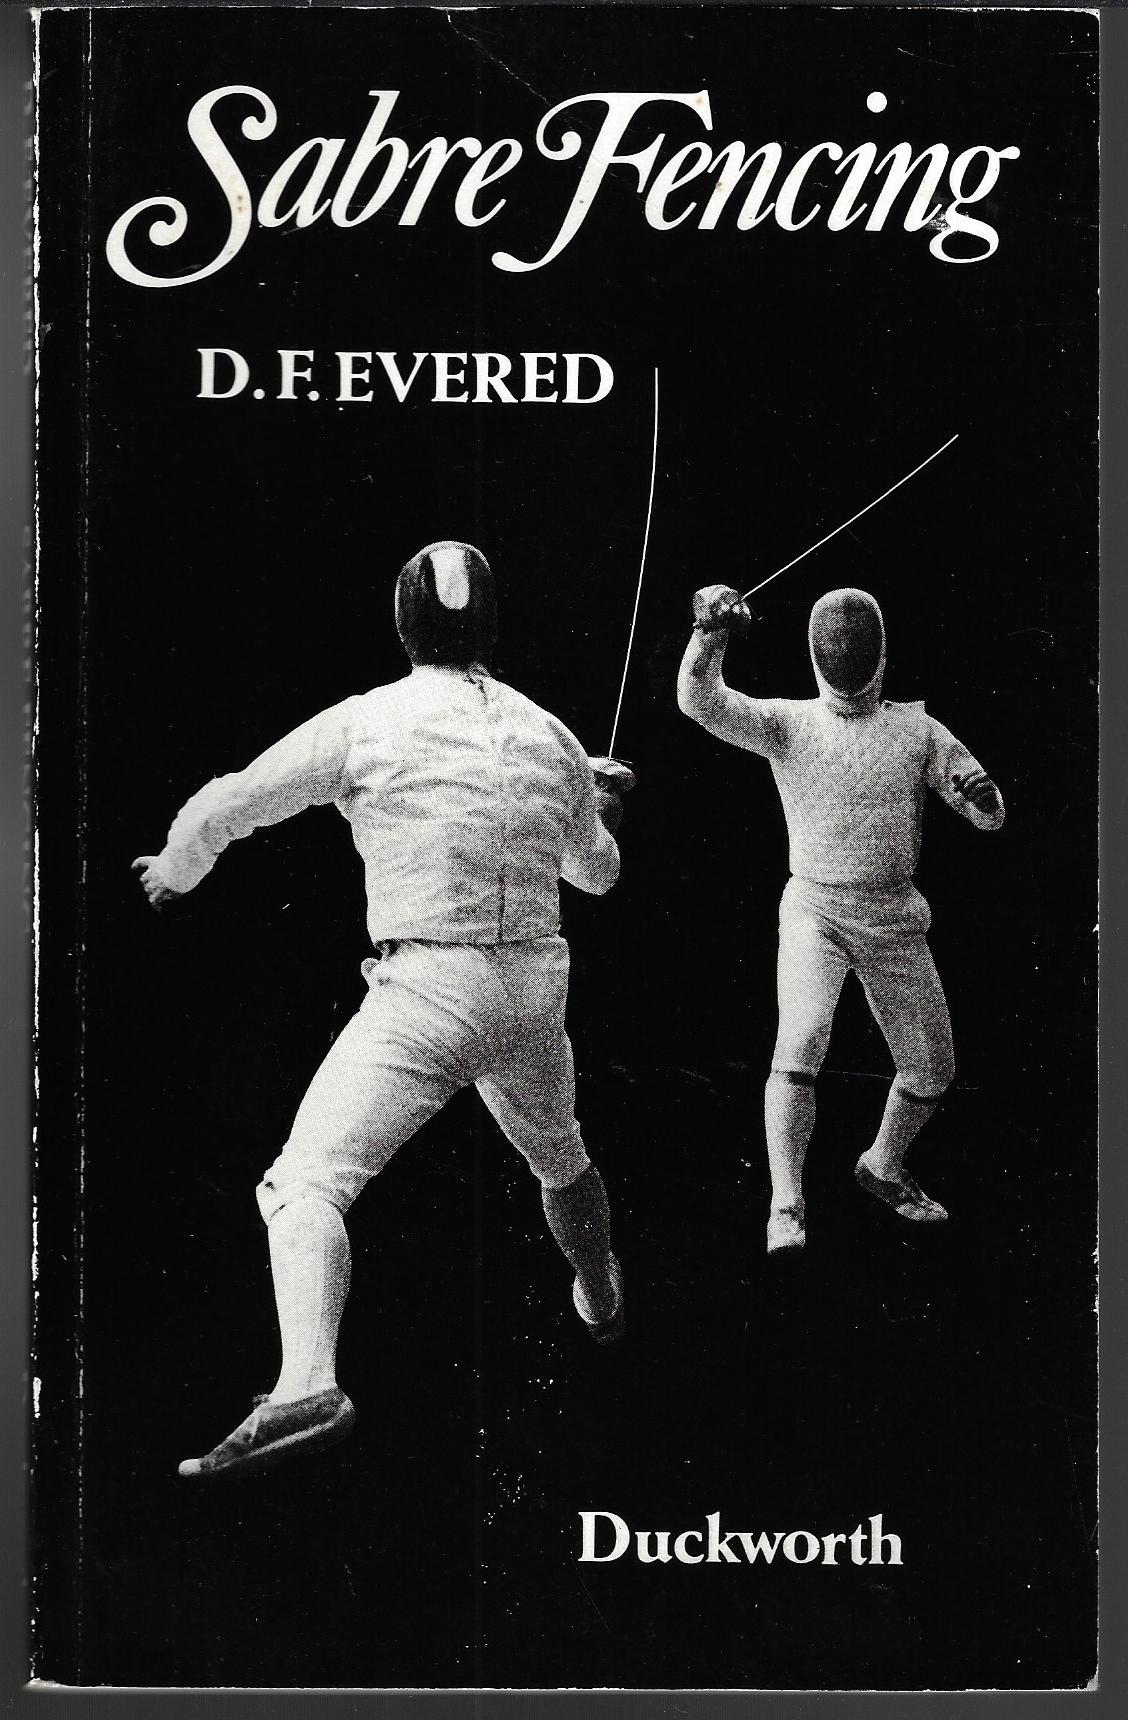 Evered, D.F. - Sabre Fencing